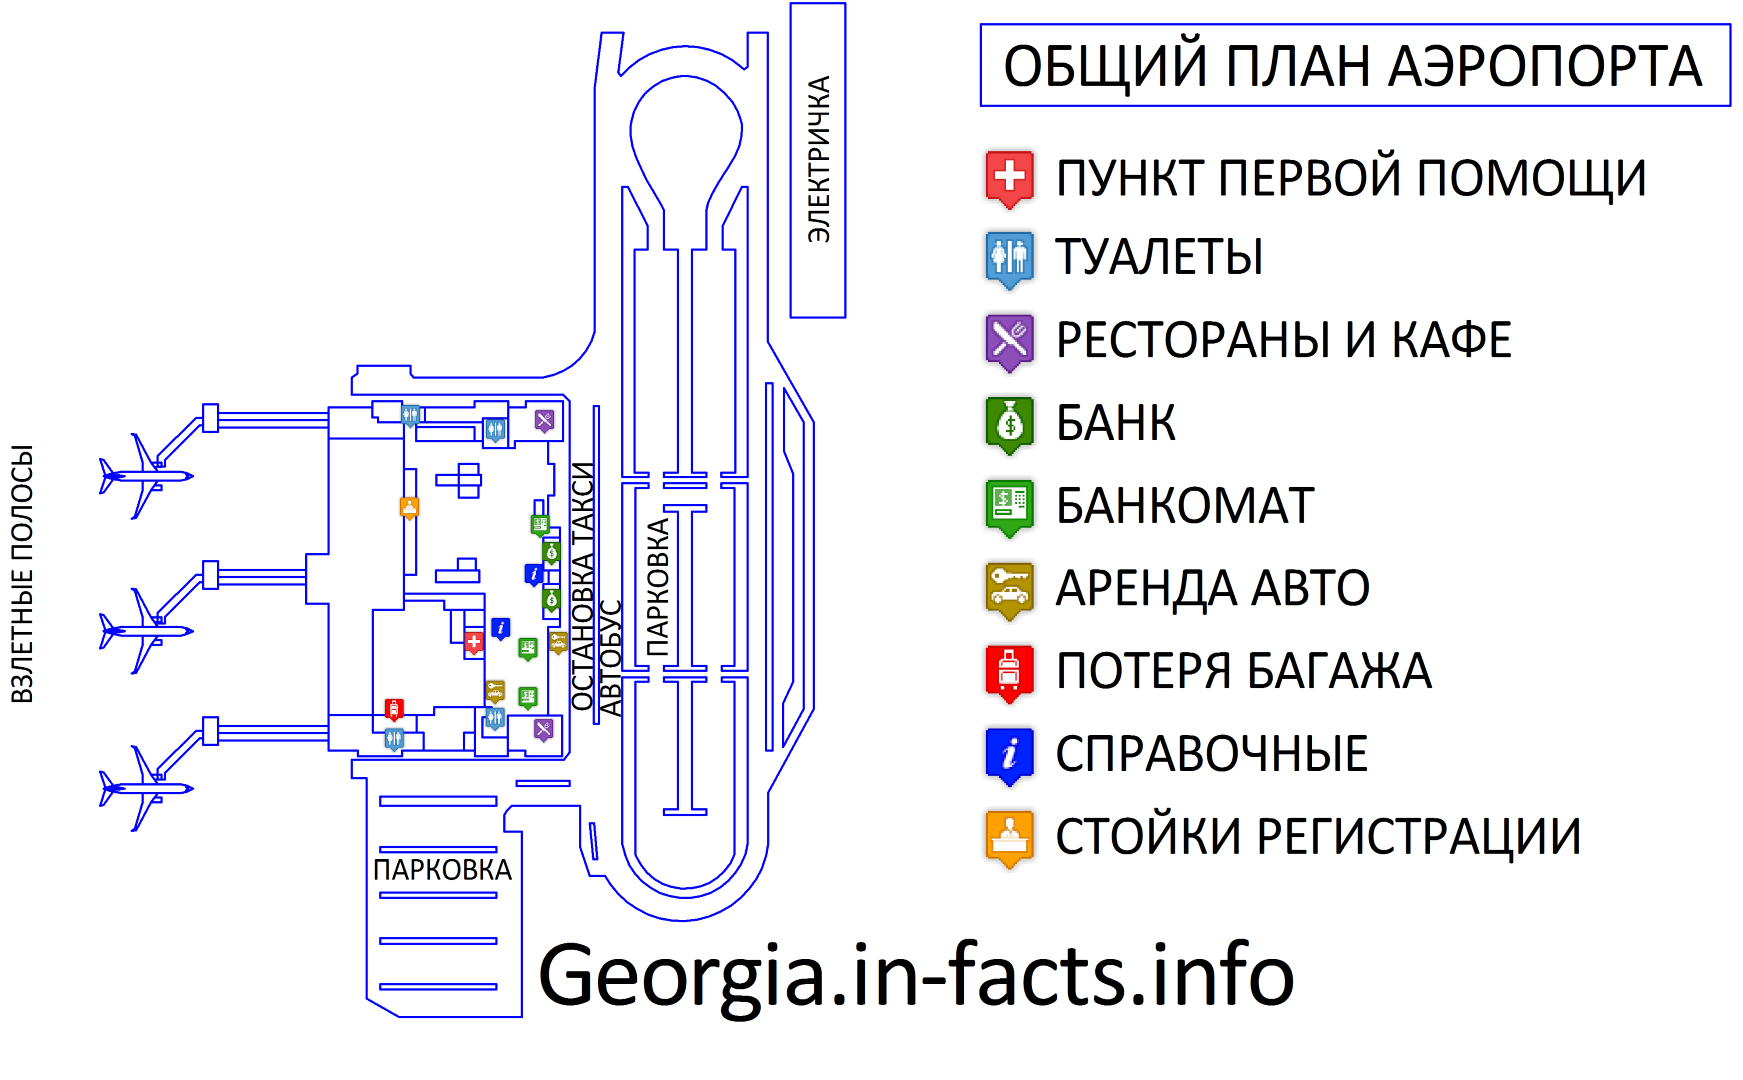 Аэропорт тбилиси (tbilisi) — tbs